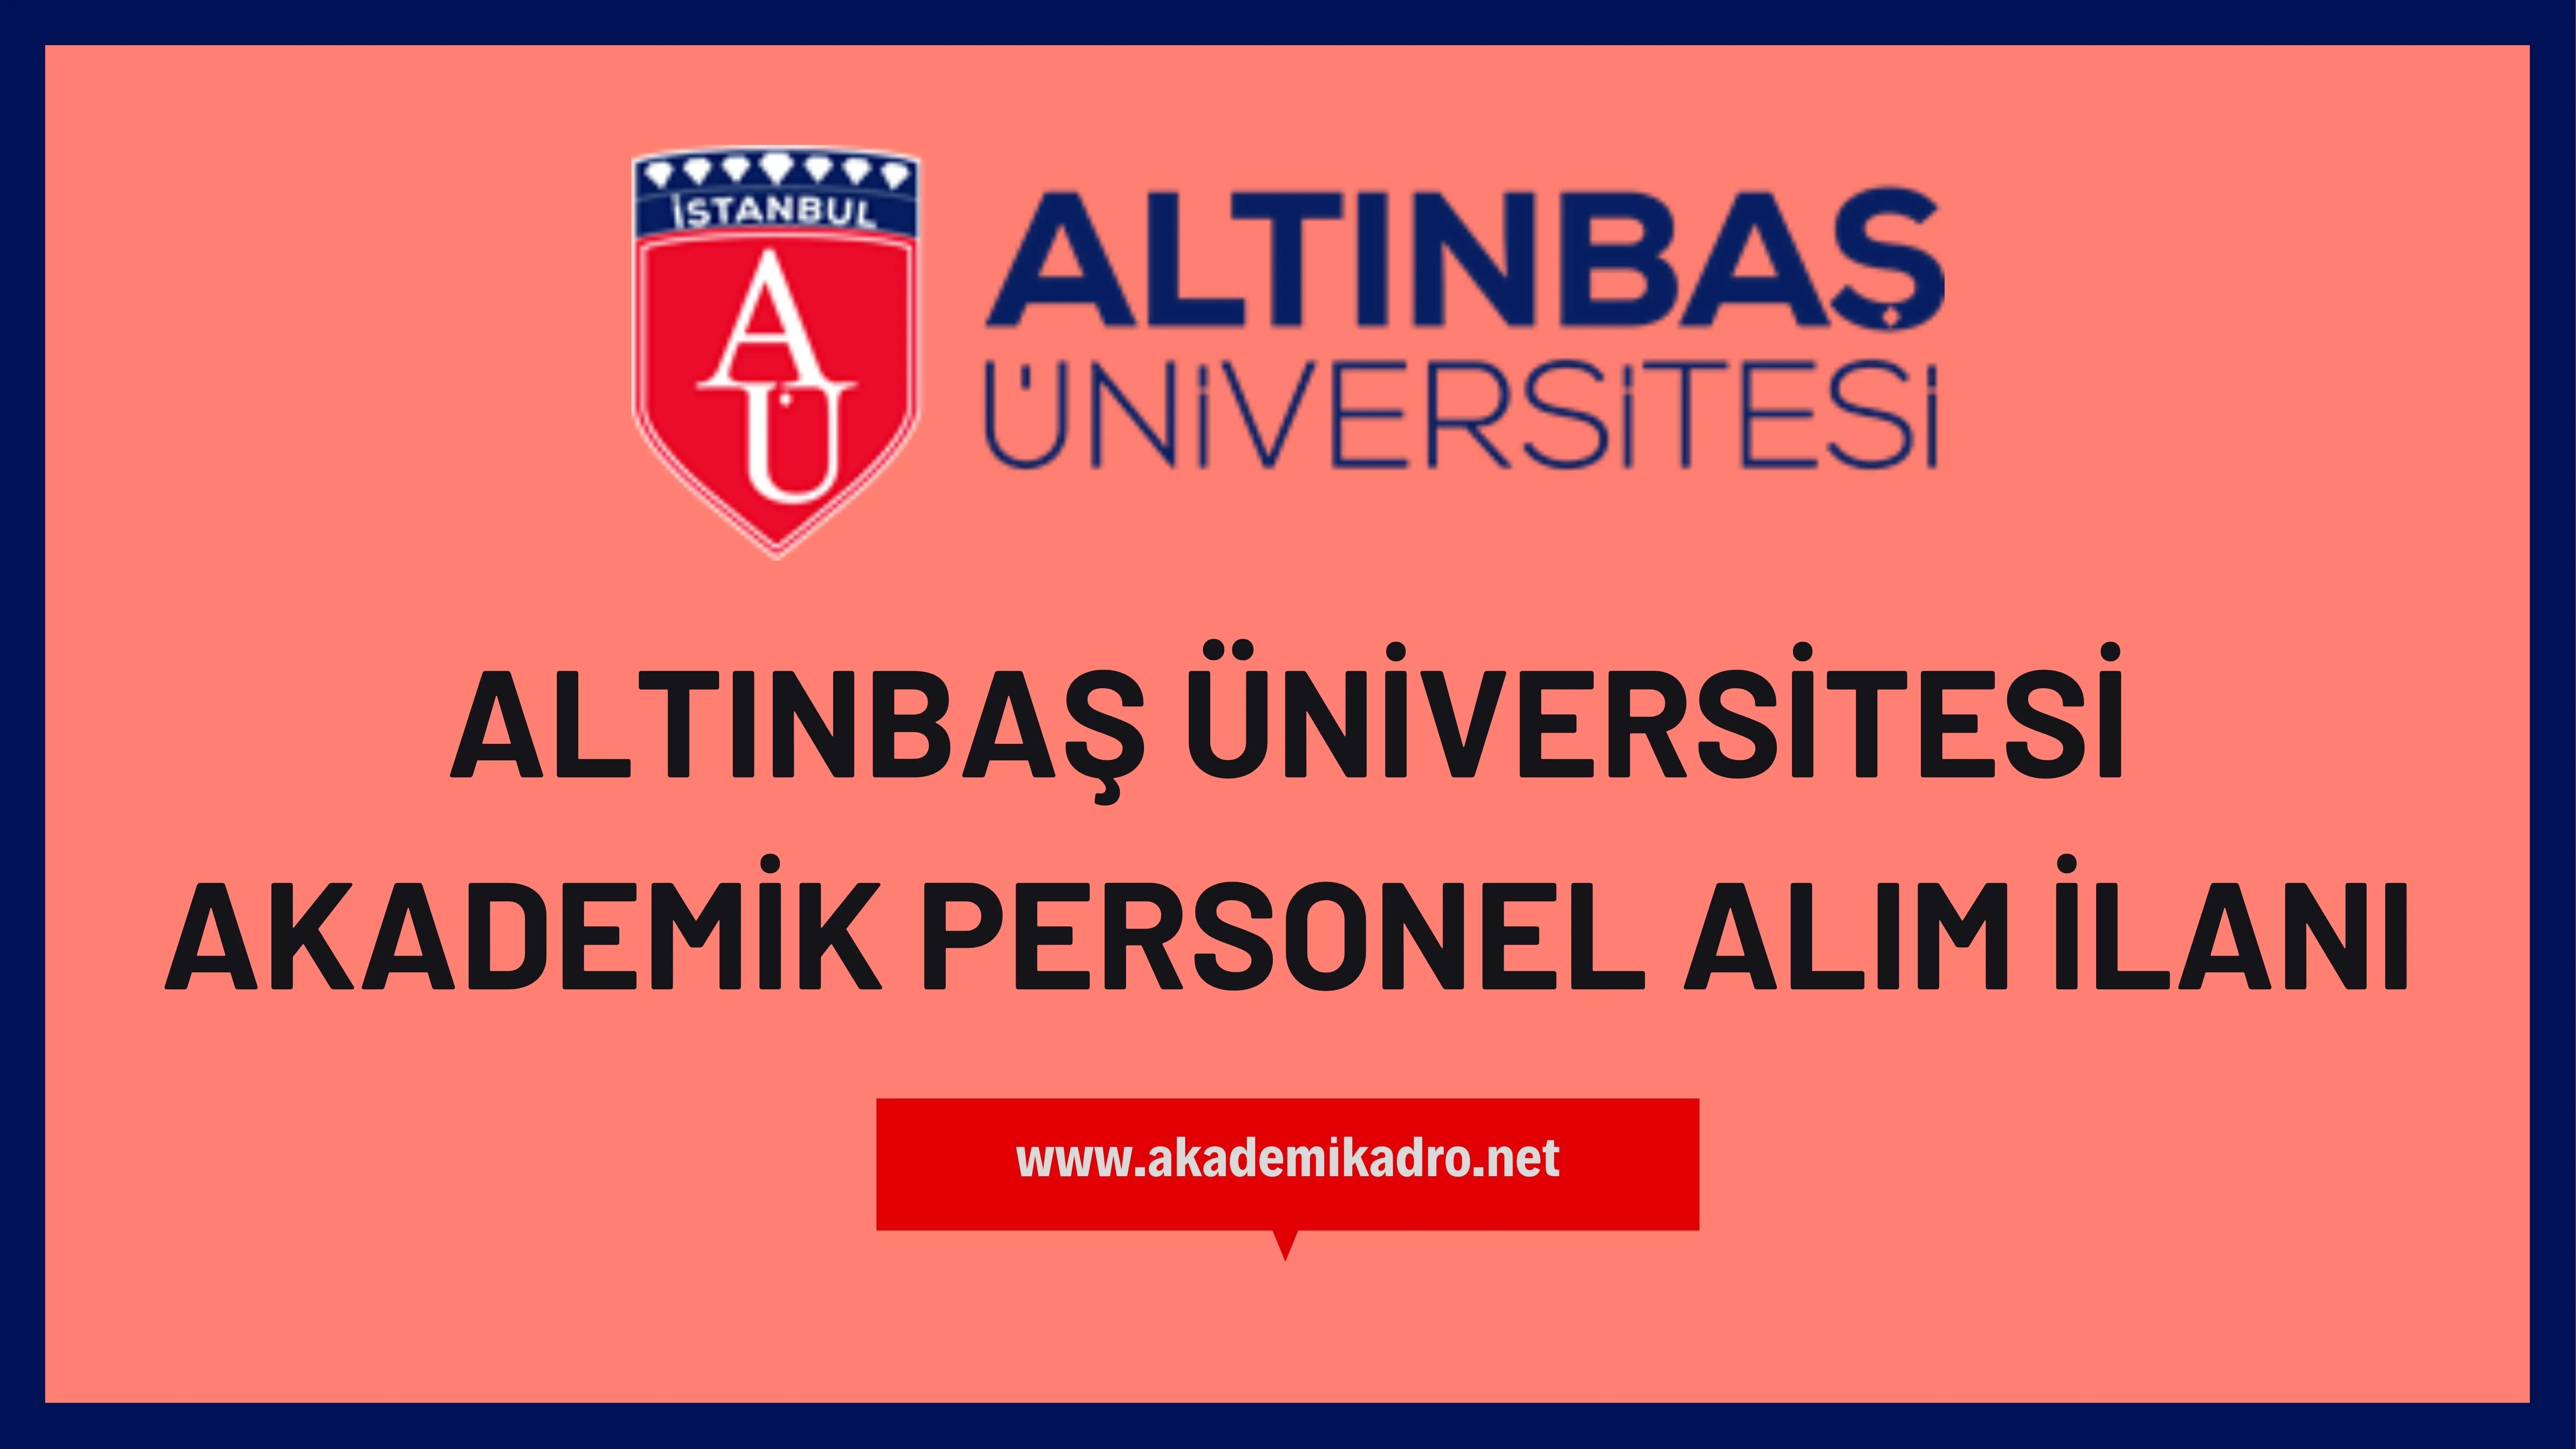 Altınbaş Üniversitesi birçok alandan 15 akademik personel alacak.